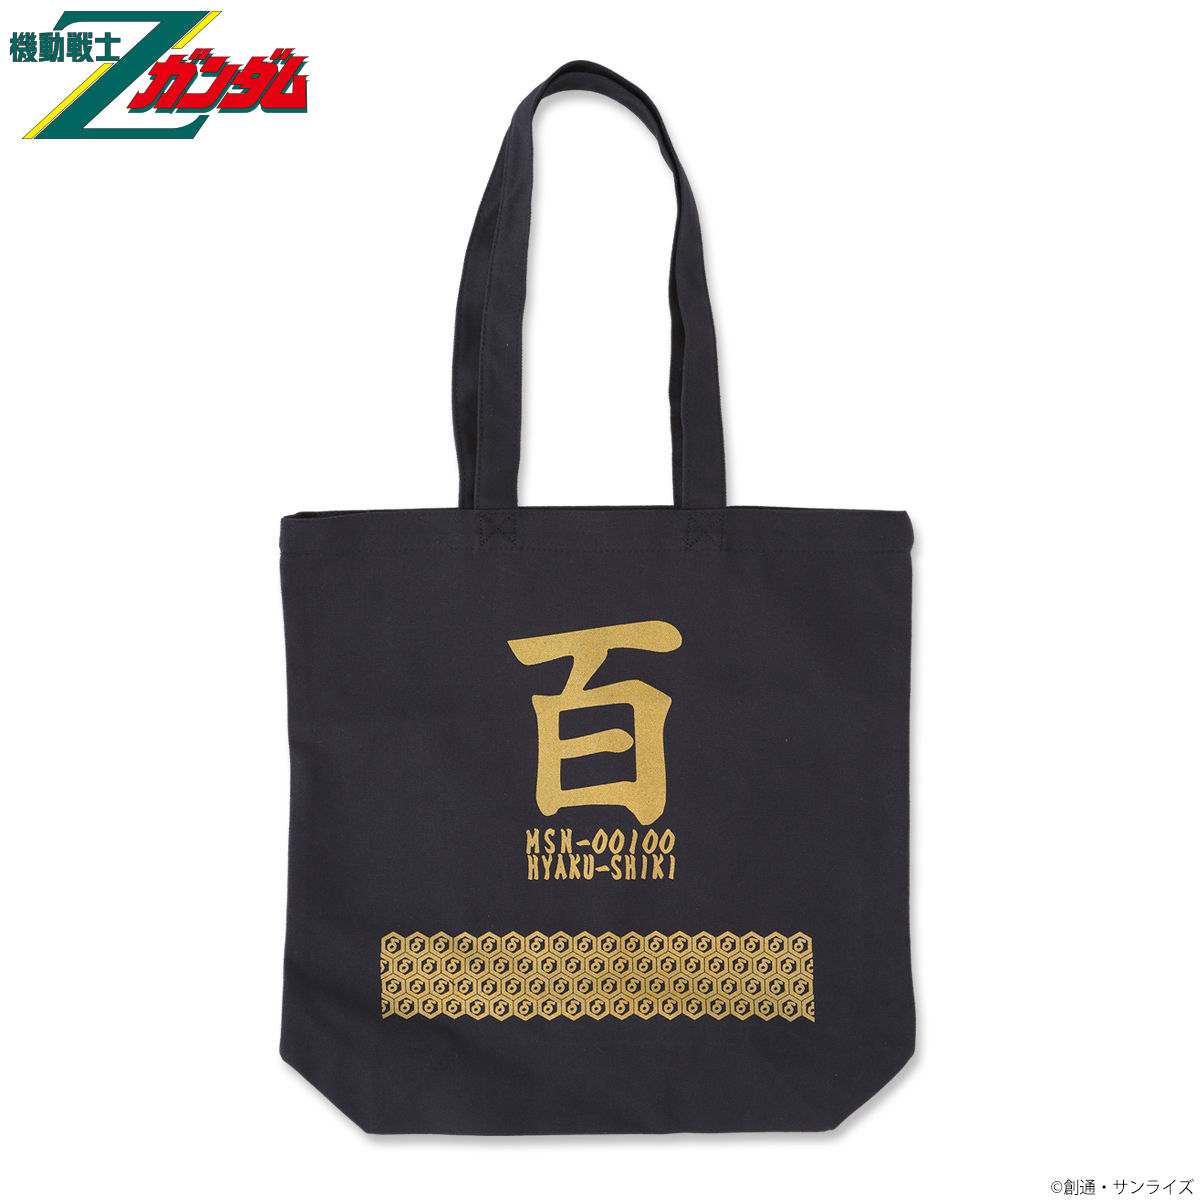 Mobile Suit Zeta Gundam Hyaku Shiki Japanese Style Tote Bag